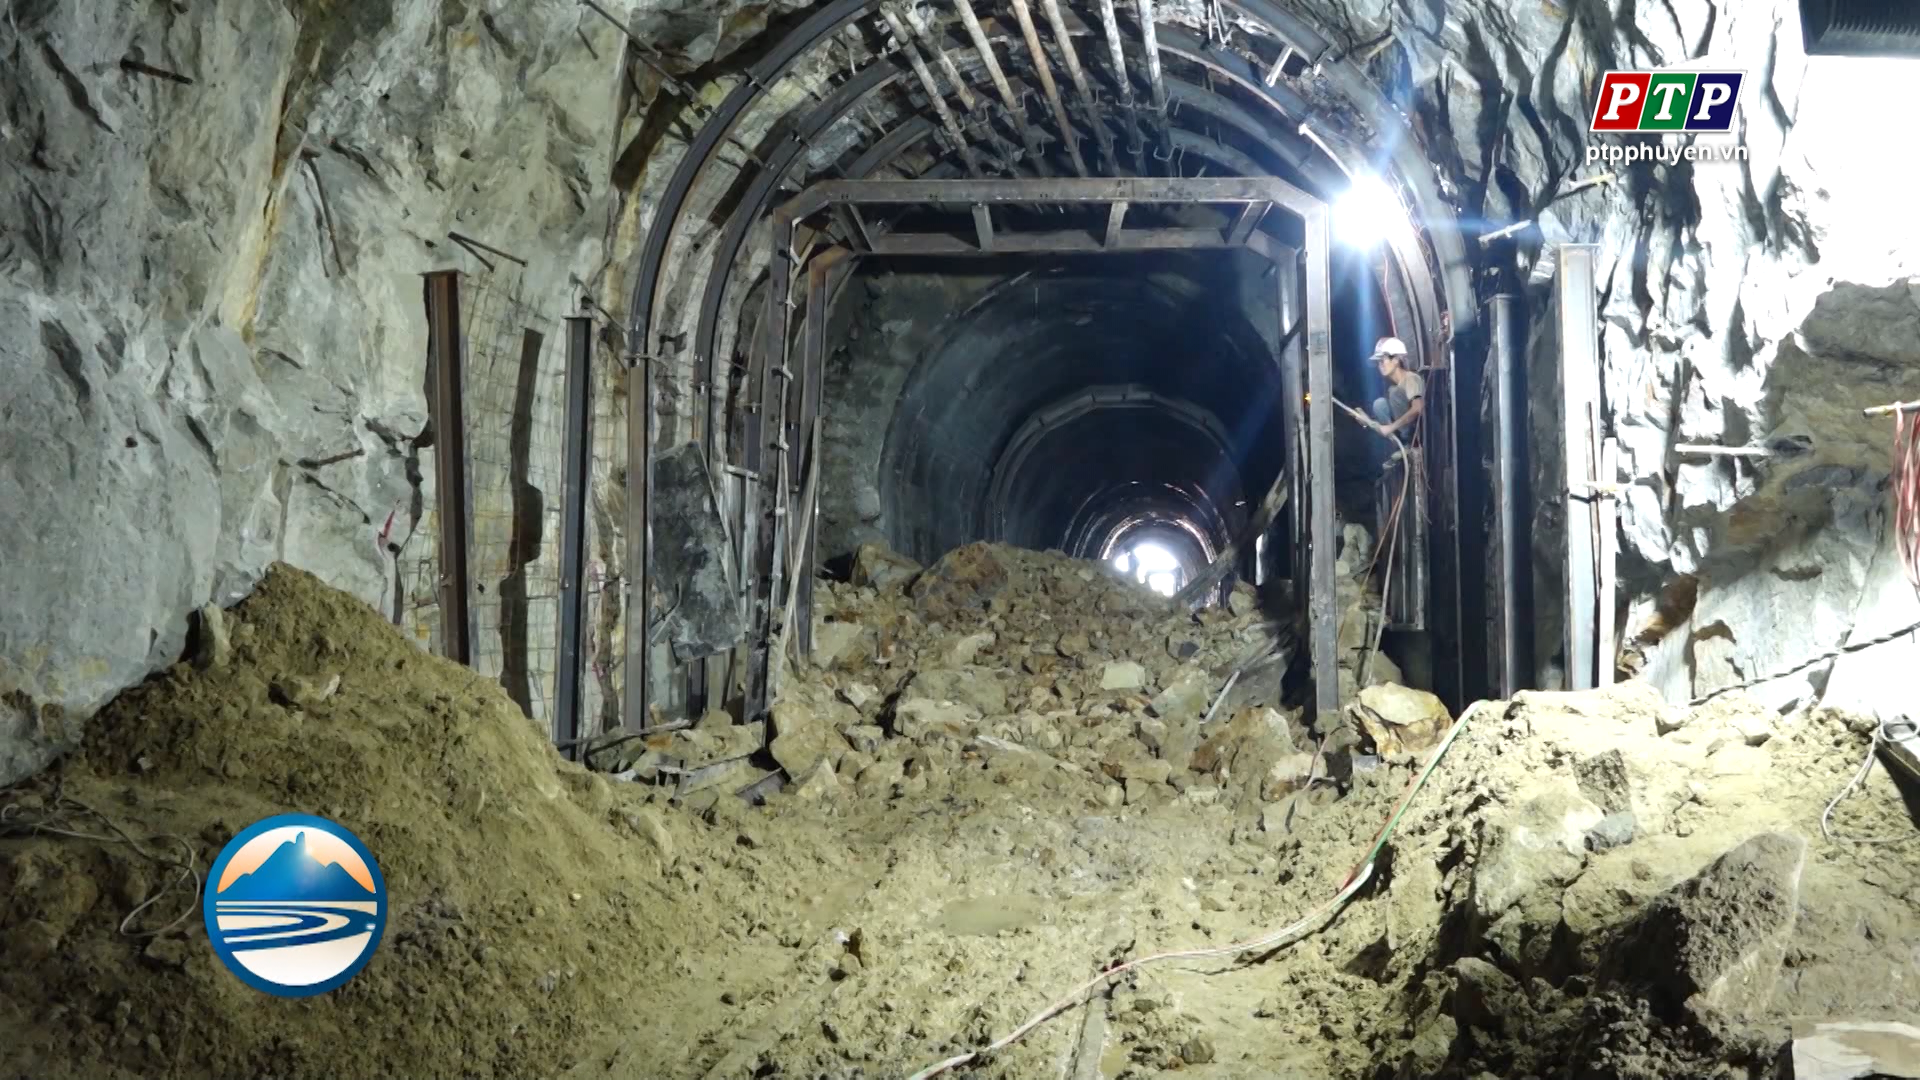 Triển khai giải pháp khắc phục sạt lở hầm đường sắt Bãi Gió